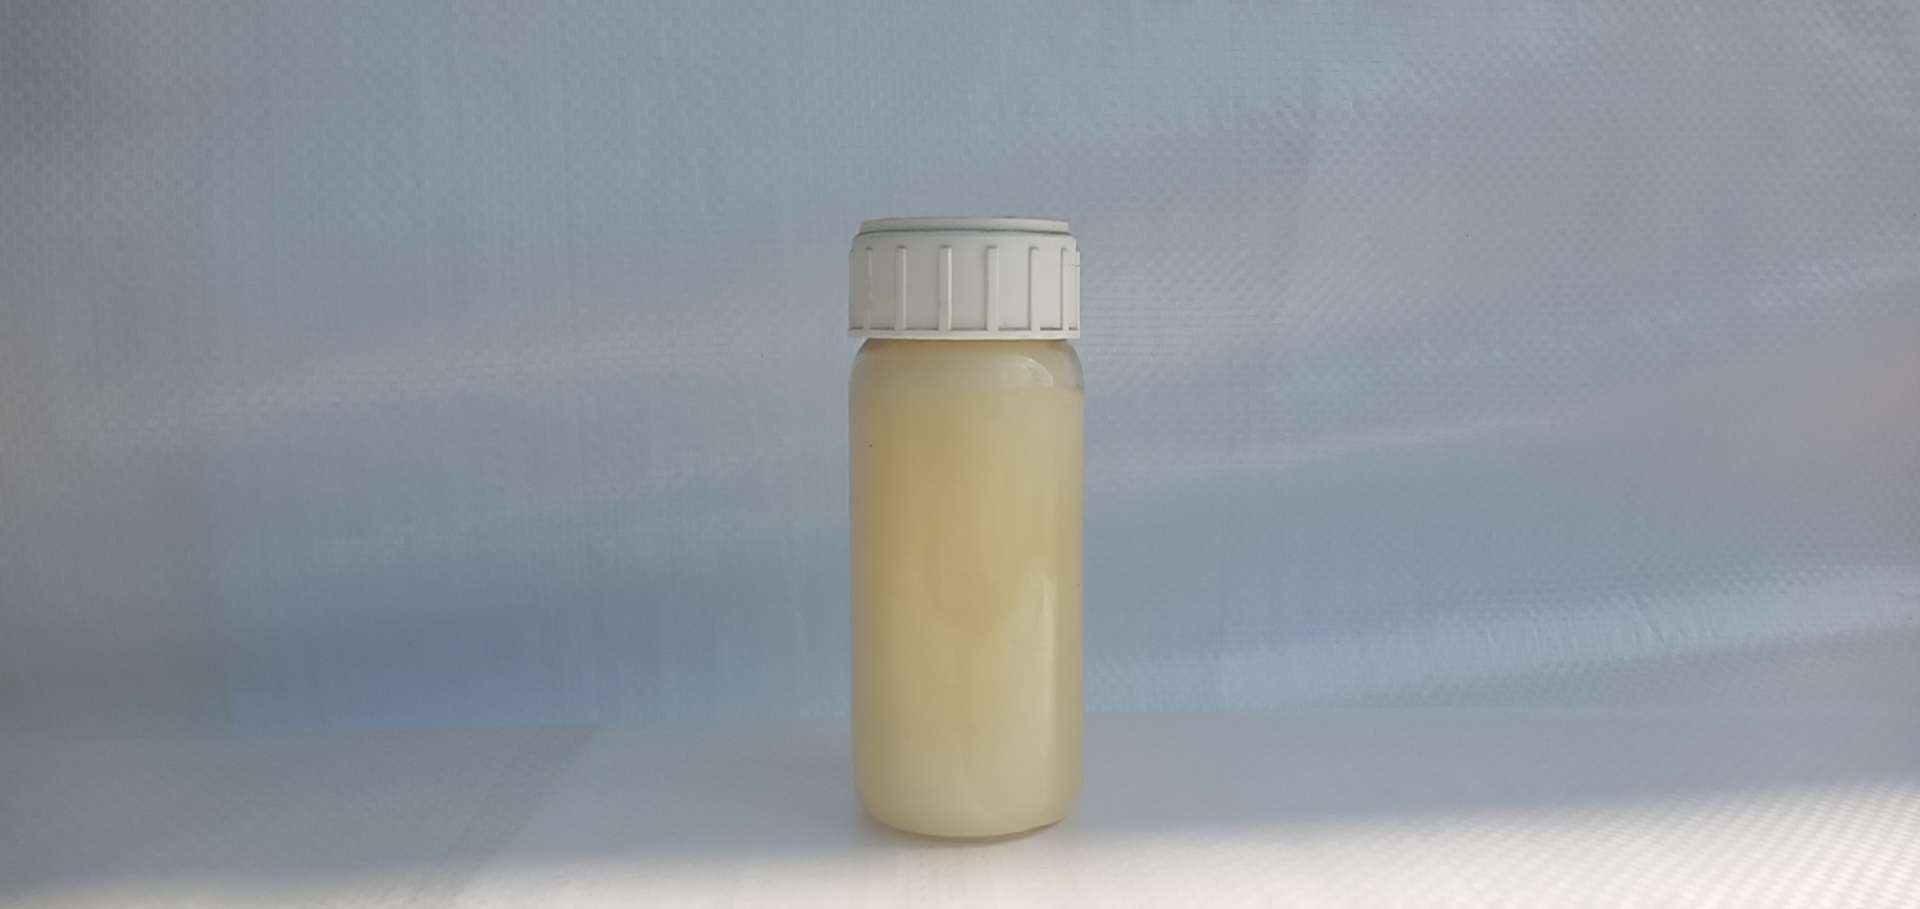 Castor Oil EthCastor Oil Ethoxylatesoxylates